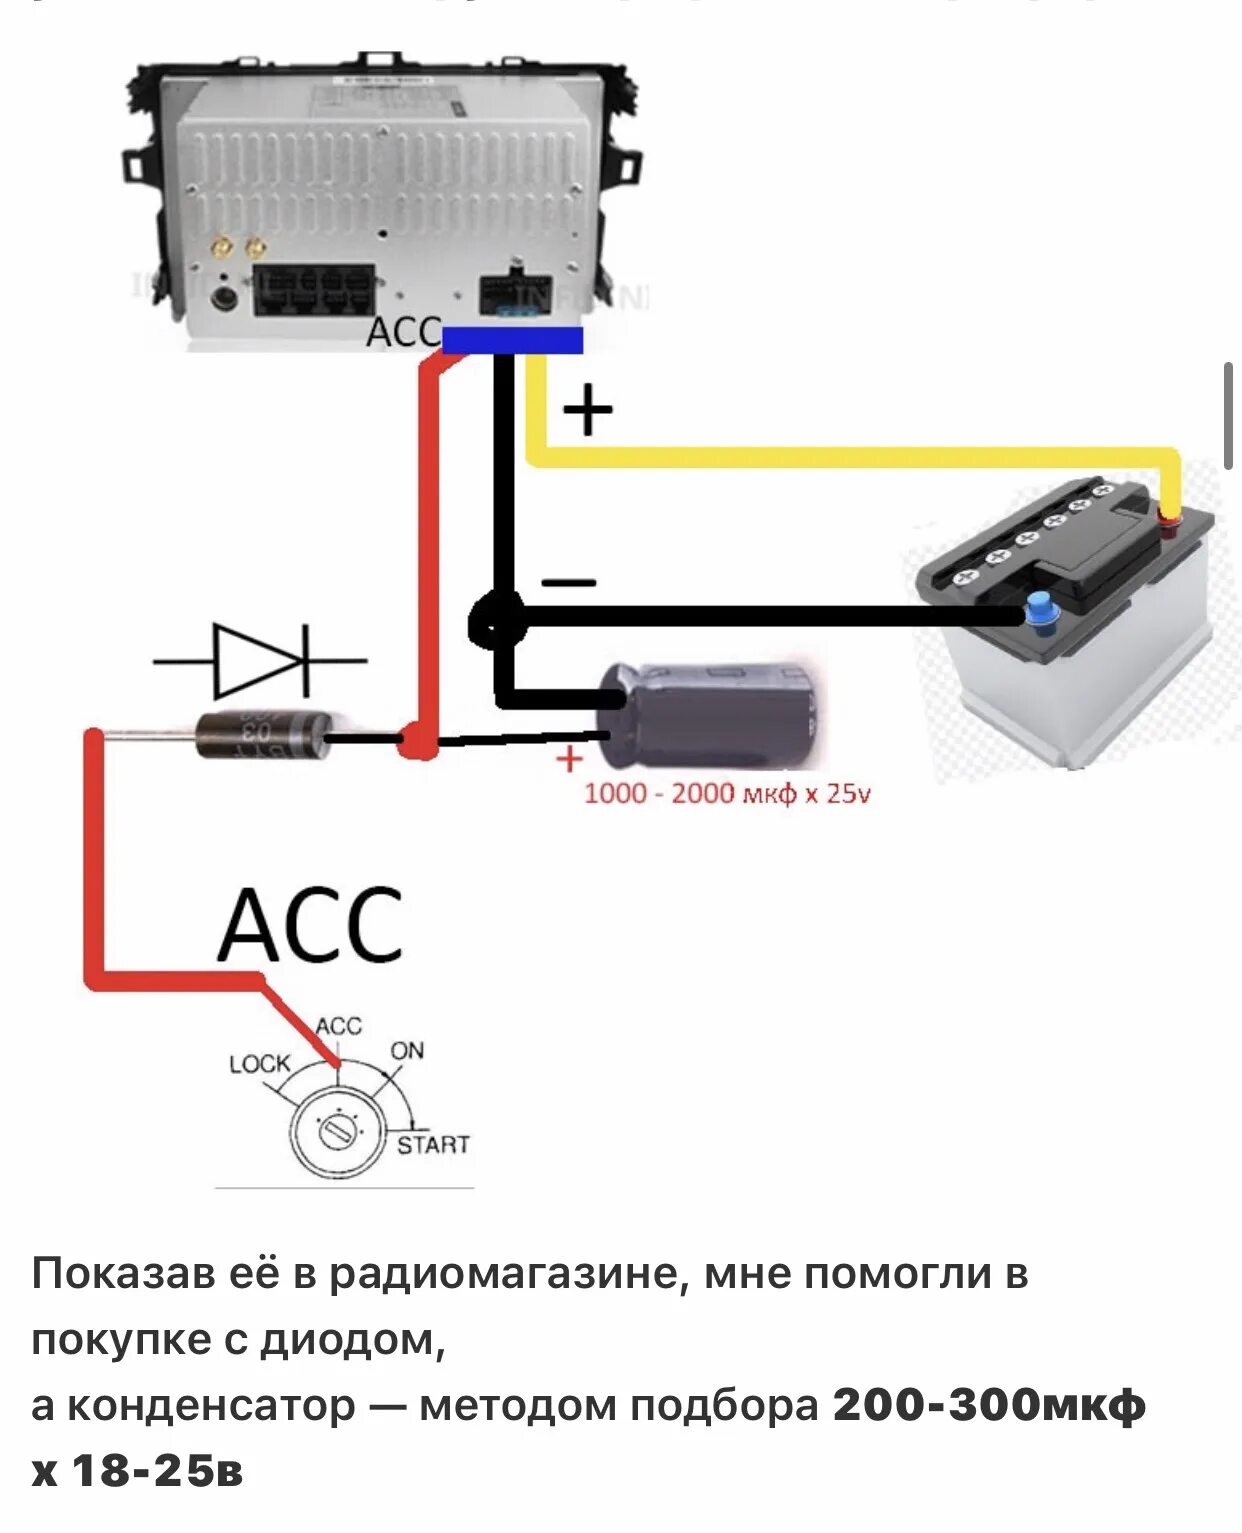 Схема подключения магнитолы через конденсатор. Схема подключения автомобильного конденсатора. Схема подключения диода и конденсатора к магнитоле. Схема подключения магнитолы диодами.